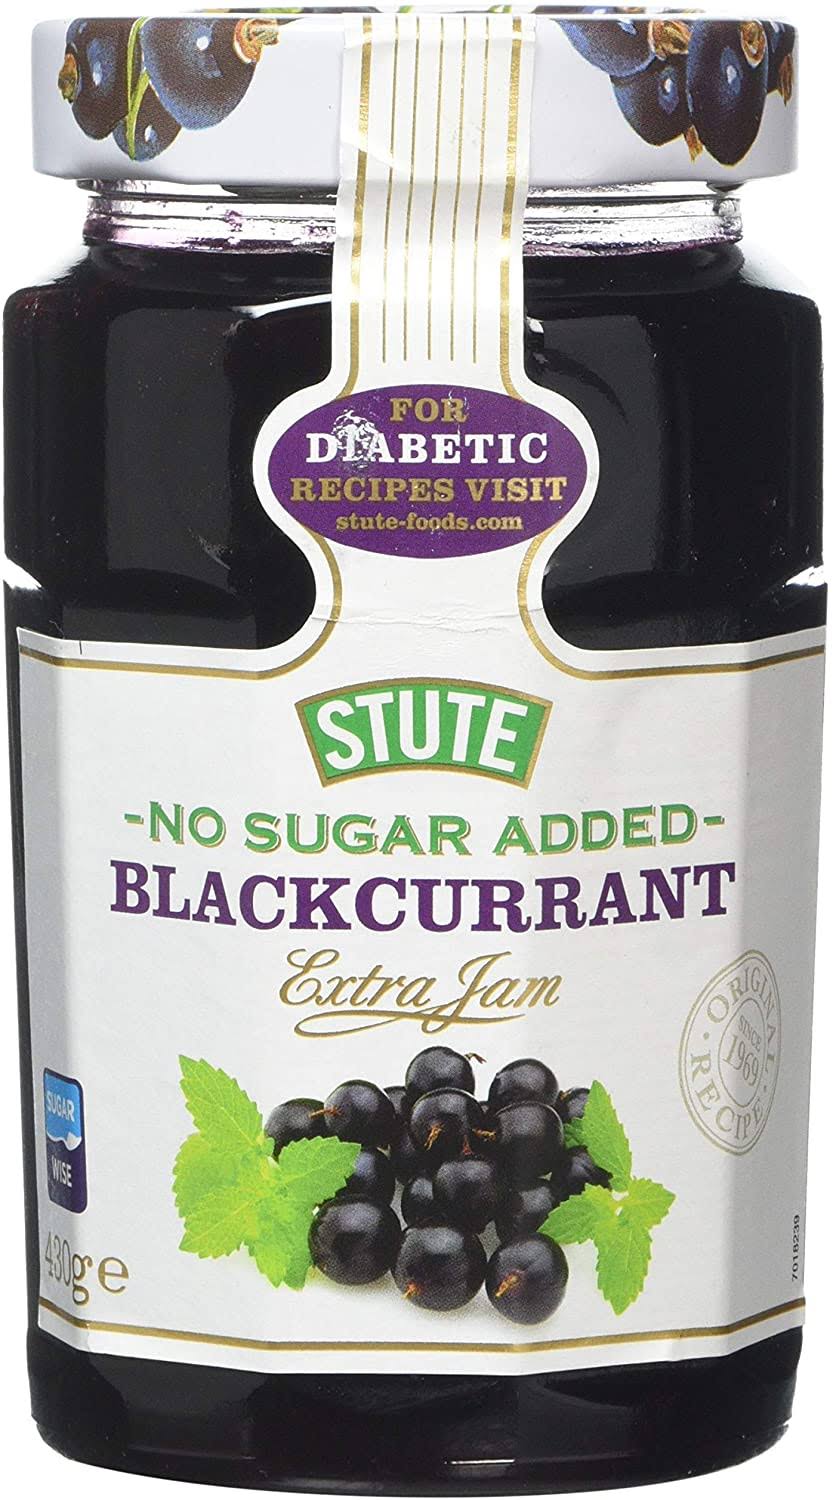 Stute No Sugar Added Extra Jam - Blackcurrant, 430g